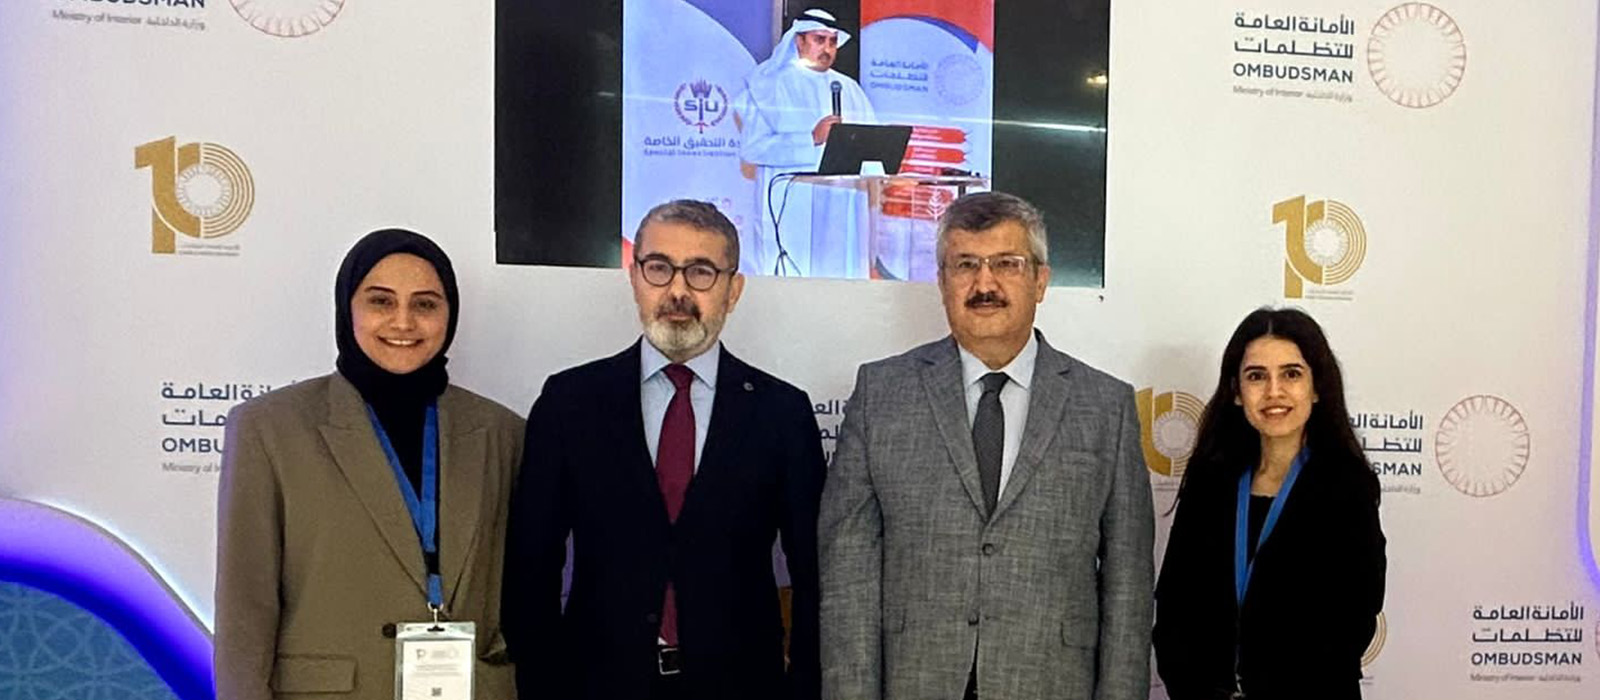 Başkanımız Prof. Dr. Muharrem Kılıç ve Kurul Üyemiz Ünal Sade, Bahreyn Krallığı Ombudsmanlığı Tarafından Düzenlenen Uluslararası Konferansa Katılım Sağladı